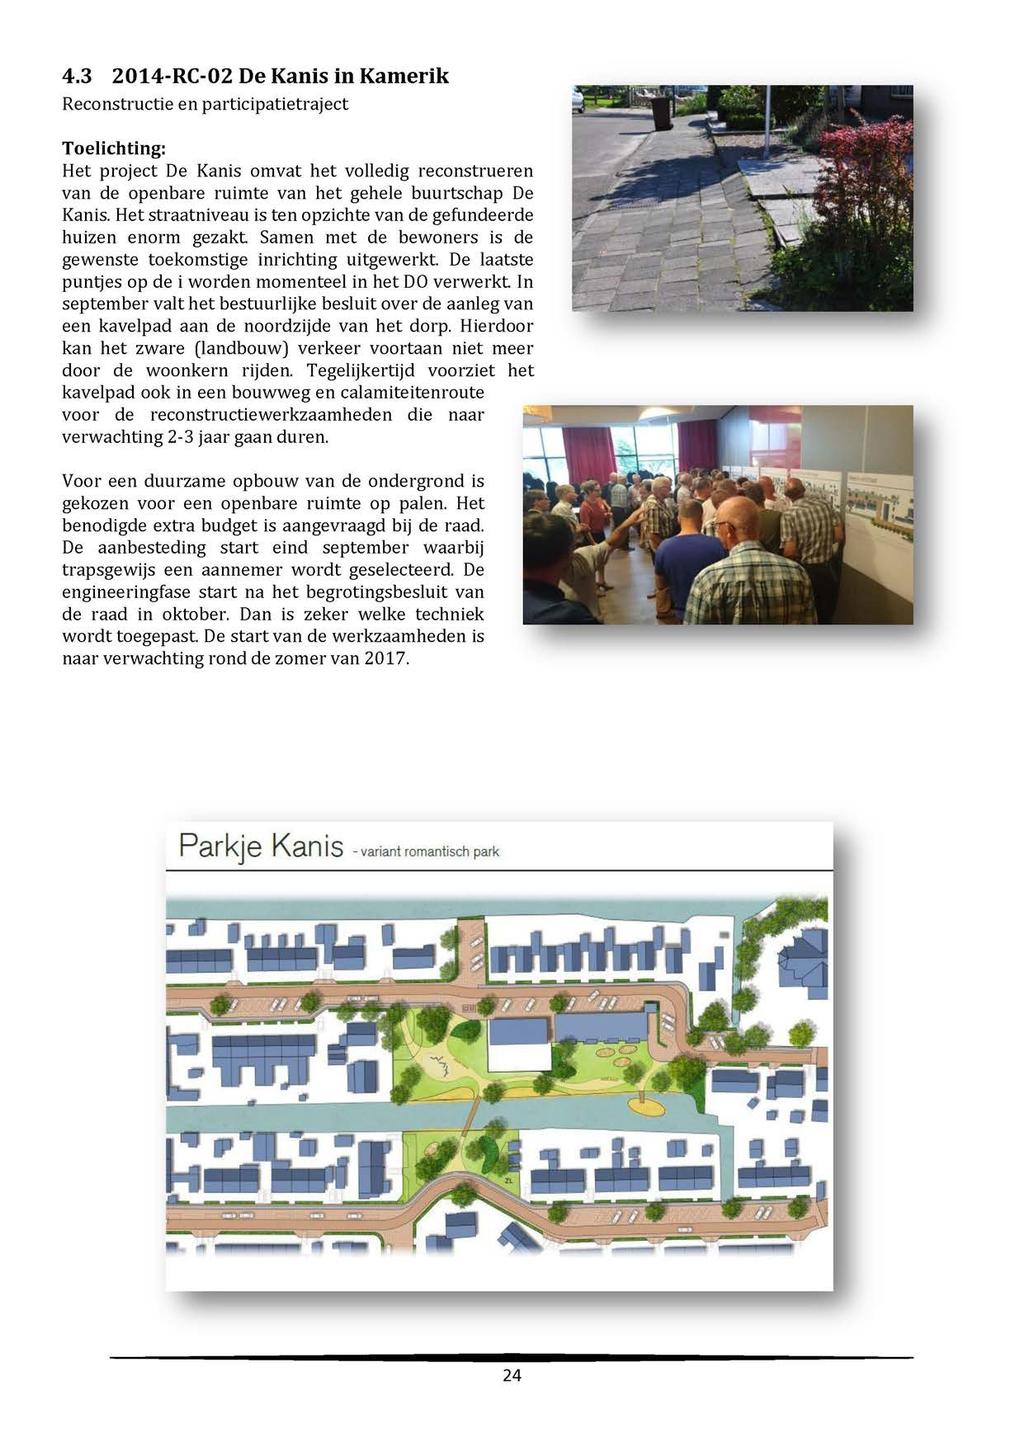 4.3 2014-RC-02 De Kanis in Kamerik Reconstructie en participatietraject Toelichting: Het project De Kanis omvat het volledig reconstrueren van de openbare ruimte van het gehele buurtschap De Kanis.